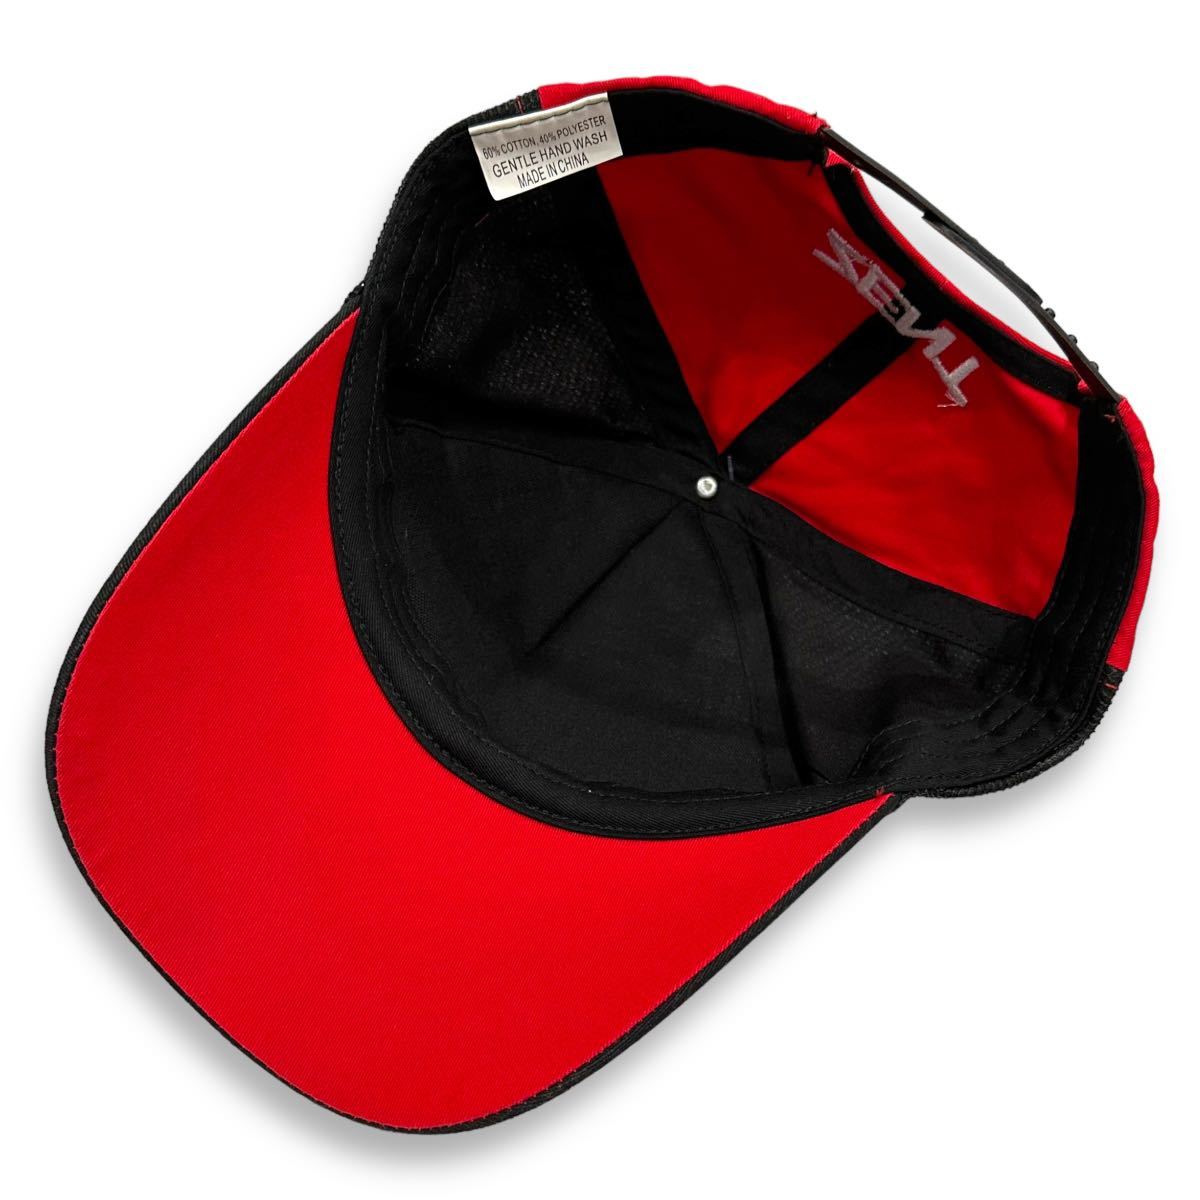  редкостный # TGR TEAM ZENT CERMO ( команда zento CERUMO ) официальный Logo 38 number кольцо вышивка сетчатая кепка чёрный красный черный / красный 